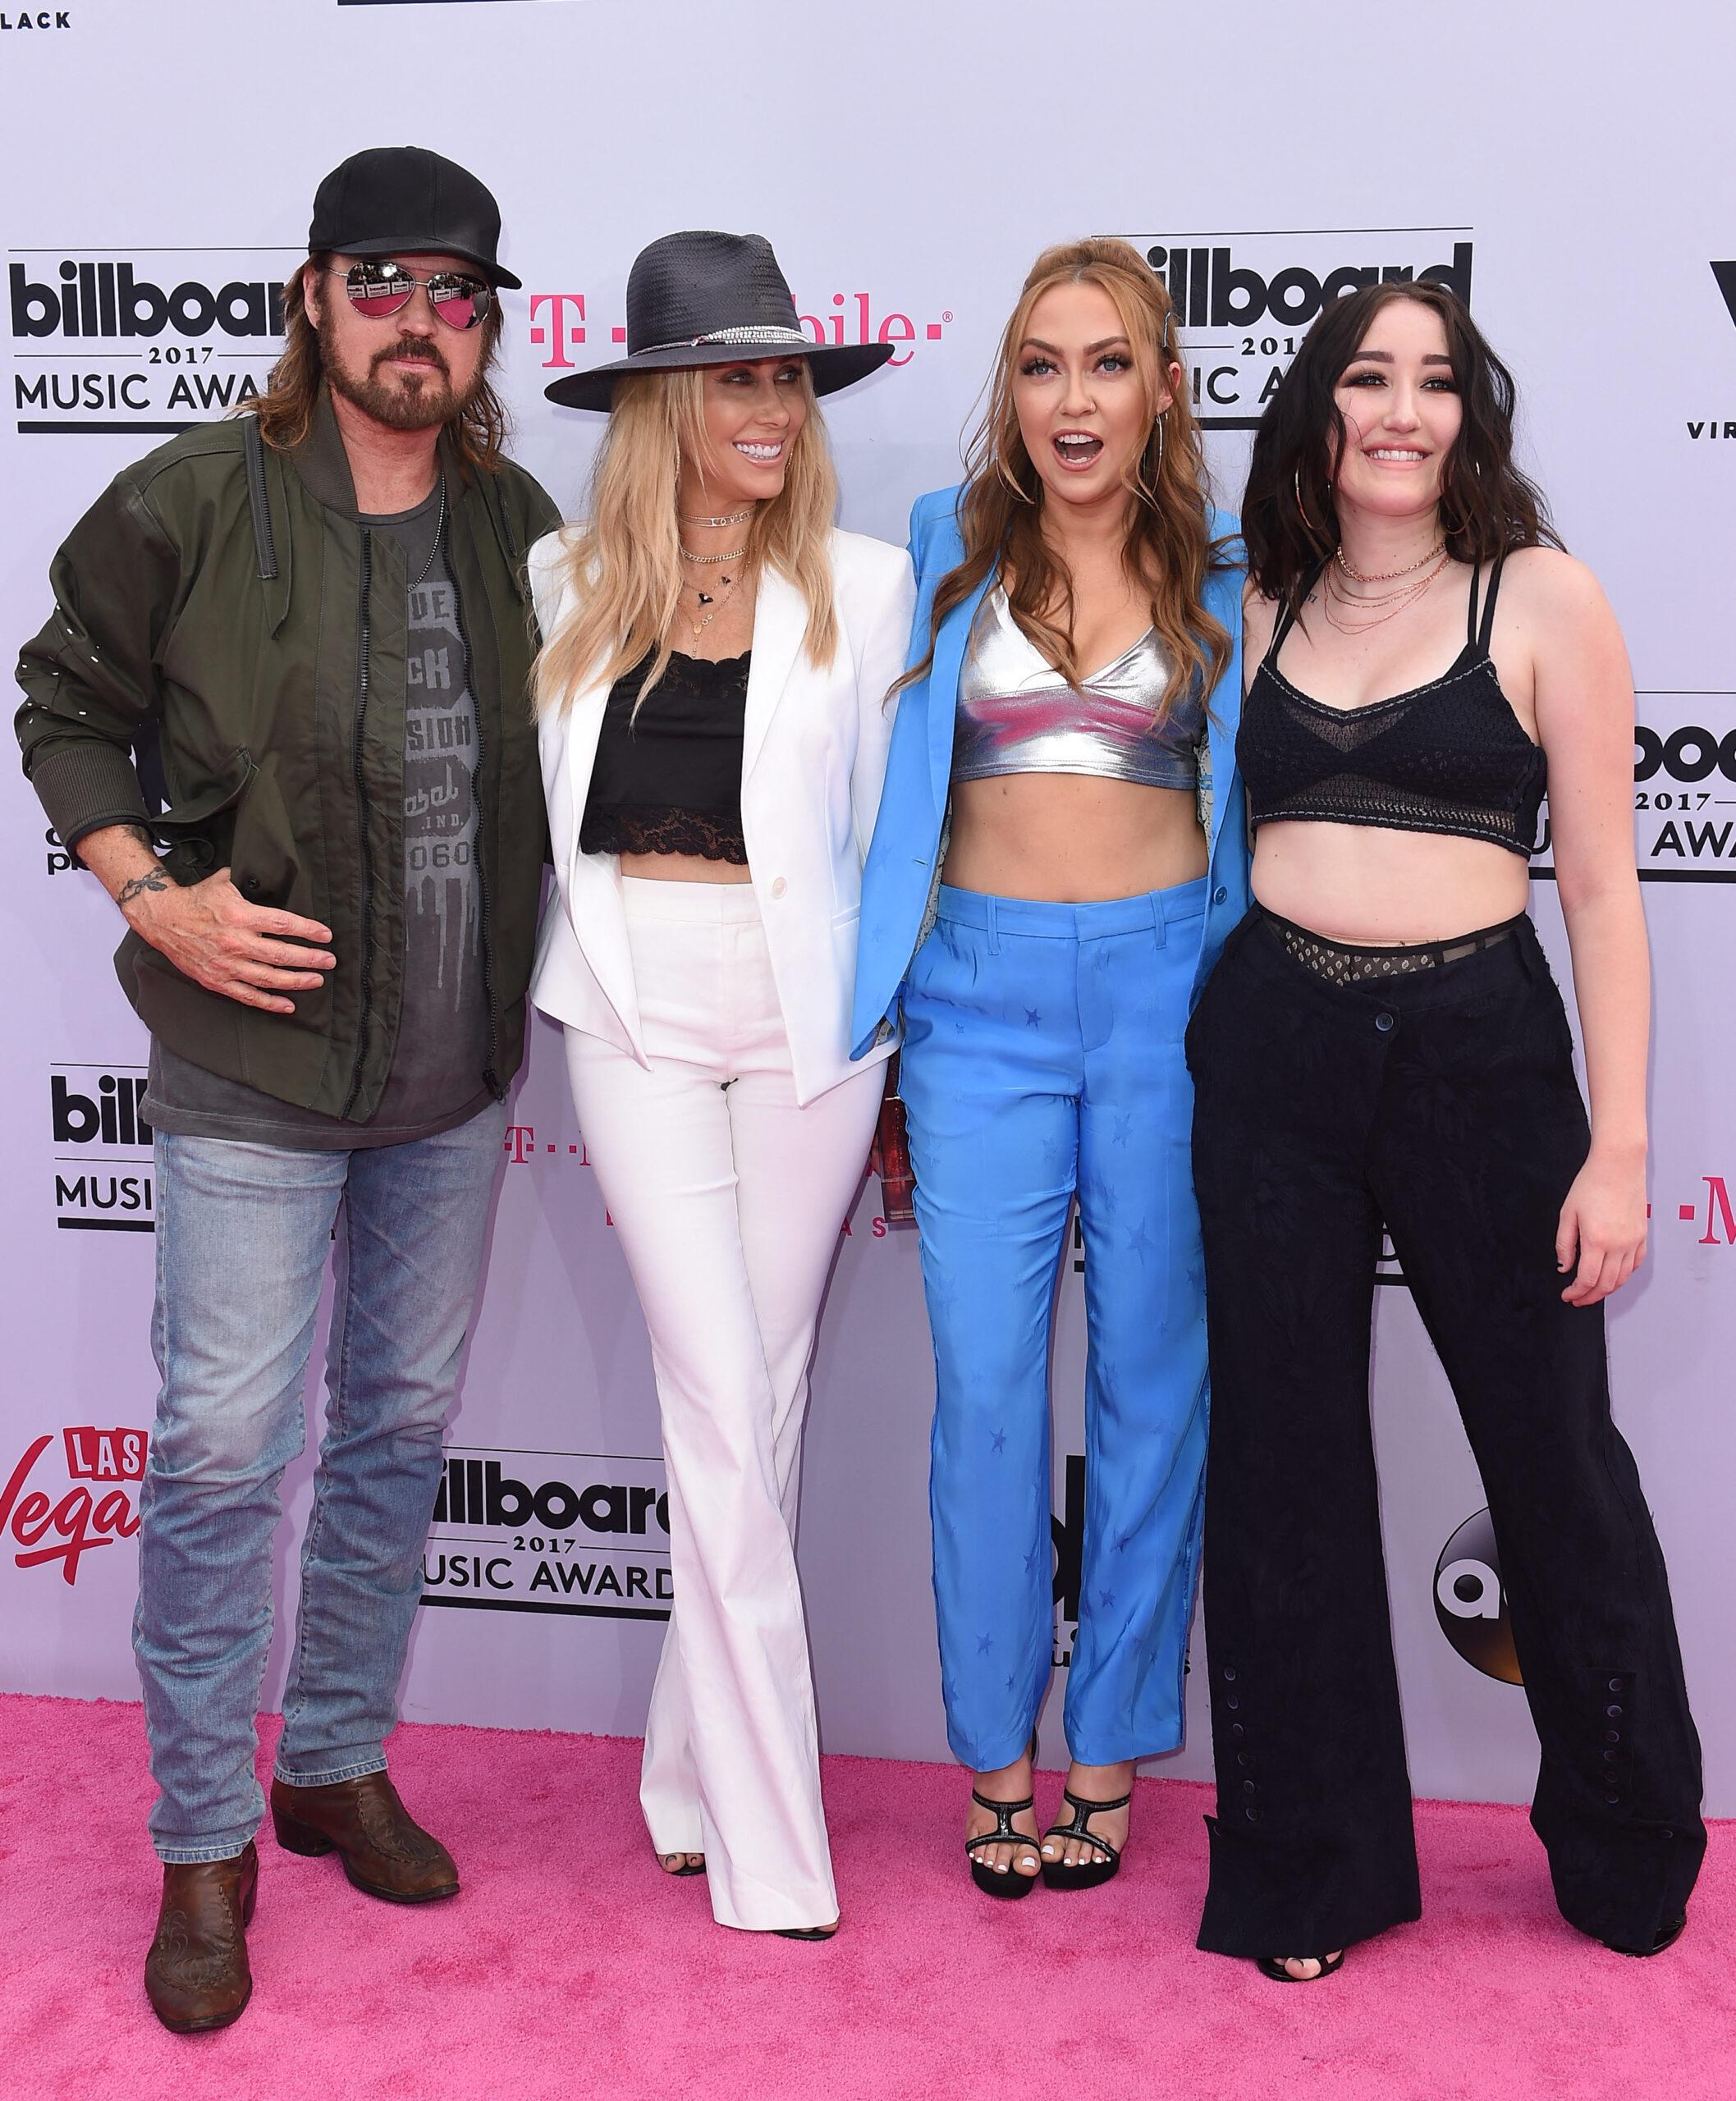 Billy Ray Cyrus, Tish Cyrus, Brandi Cyrus, and Noah Cyrus at the 2017 Billboard Music Awards